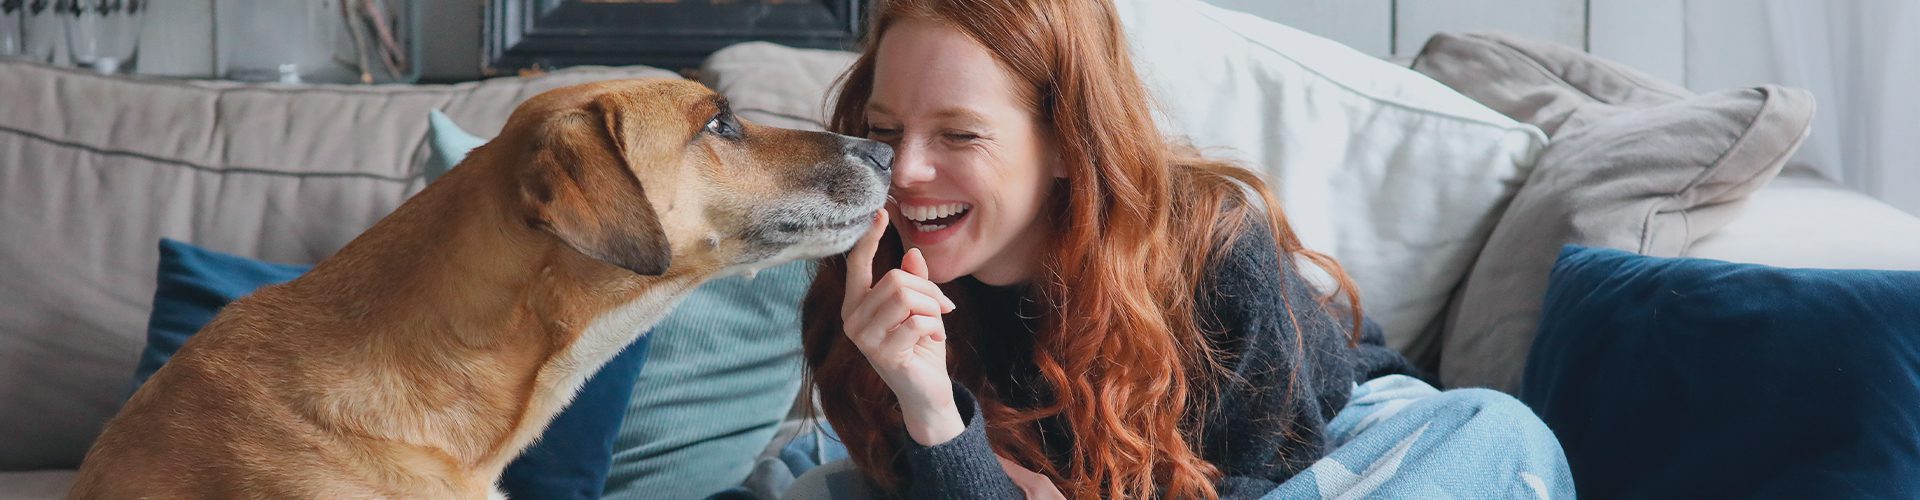 Hundeforsikring - Kvinde og hund i sofa